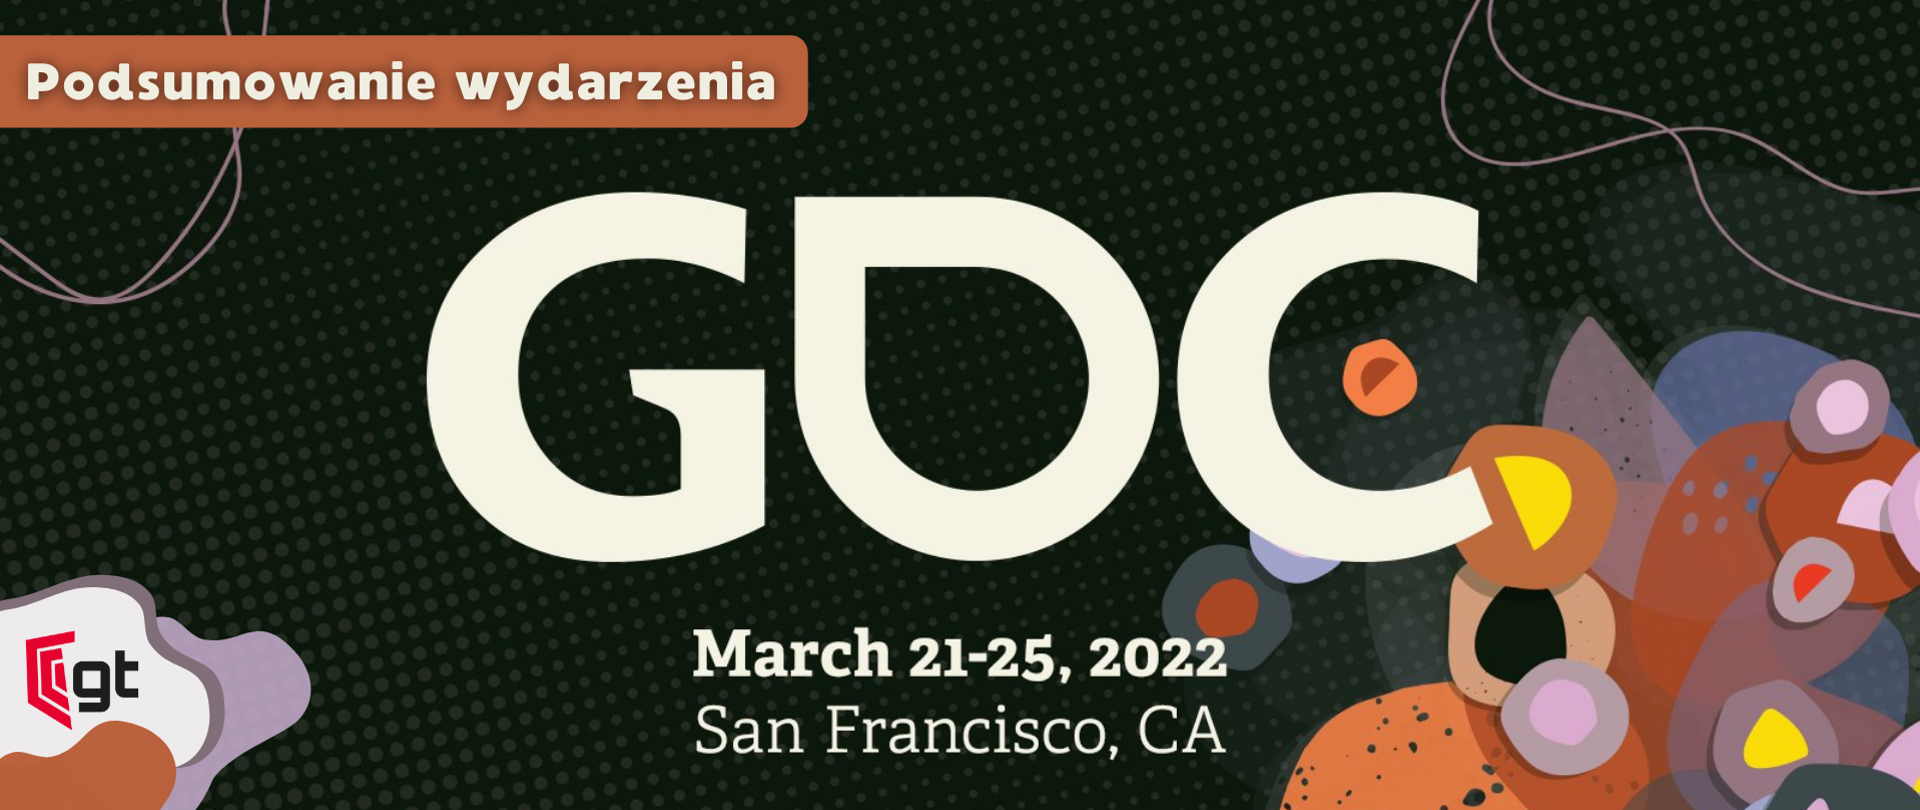 Podsumowanie wydarzenia GDC
March 21-25, 2022
San Francisco, CA